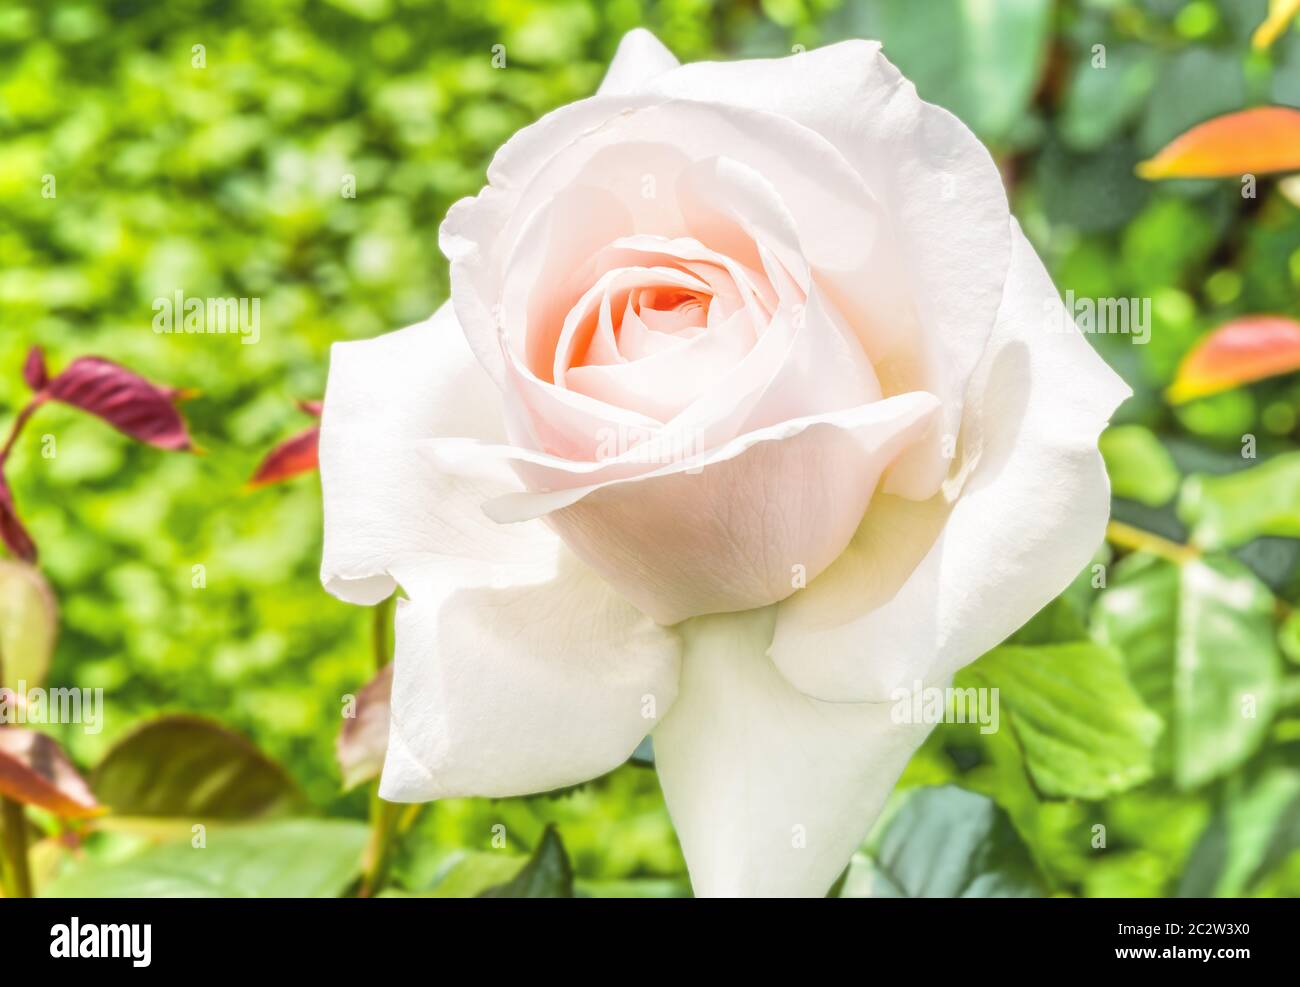 Rose Hybrid Tea Virginia - eine Rose mit doppelten Blüten, ordentlich  verdreht Blütenblätter zu einem klassischen Outlet. Die Blütenblätter im  Knospenstadium haben eine cremige Färbung Stockfotografie - Alamy